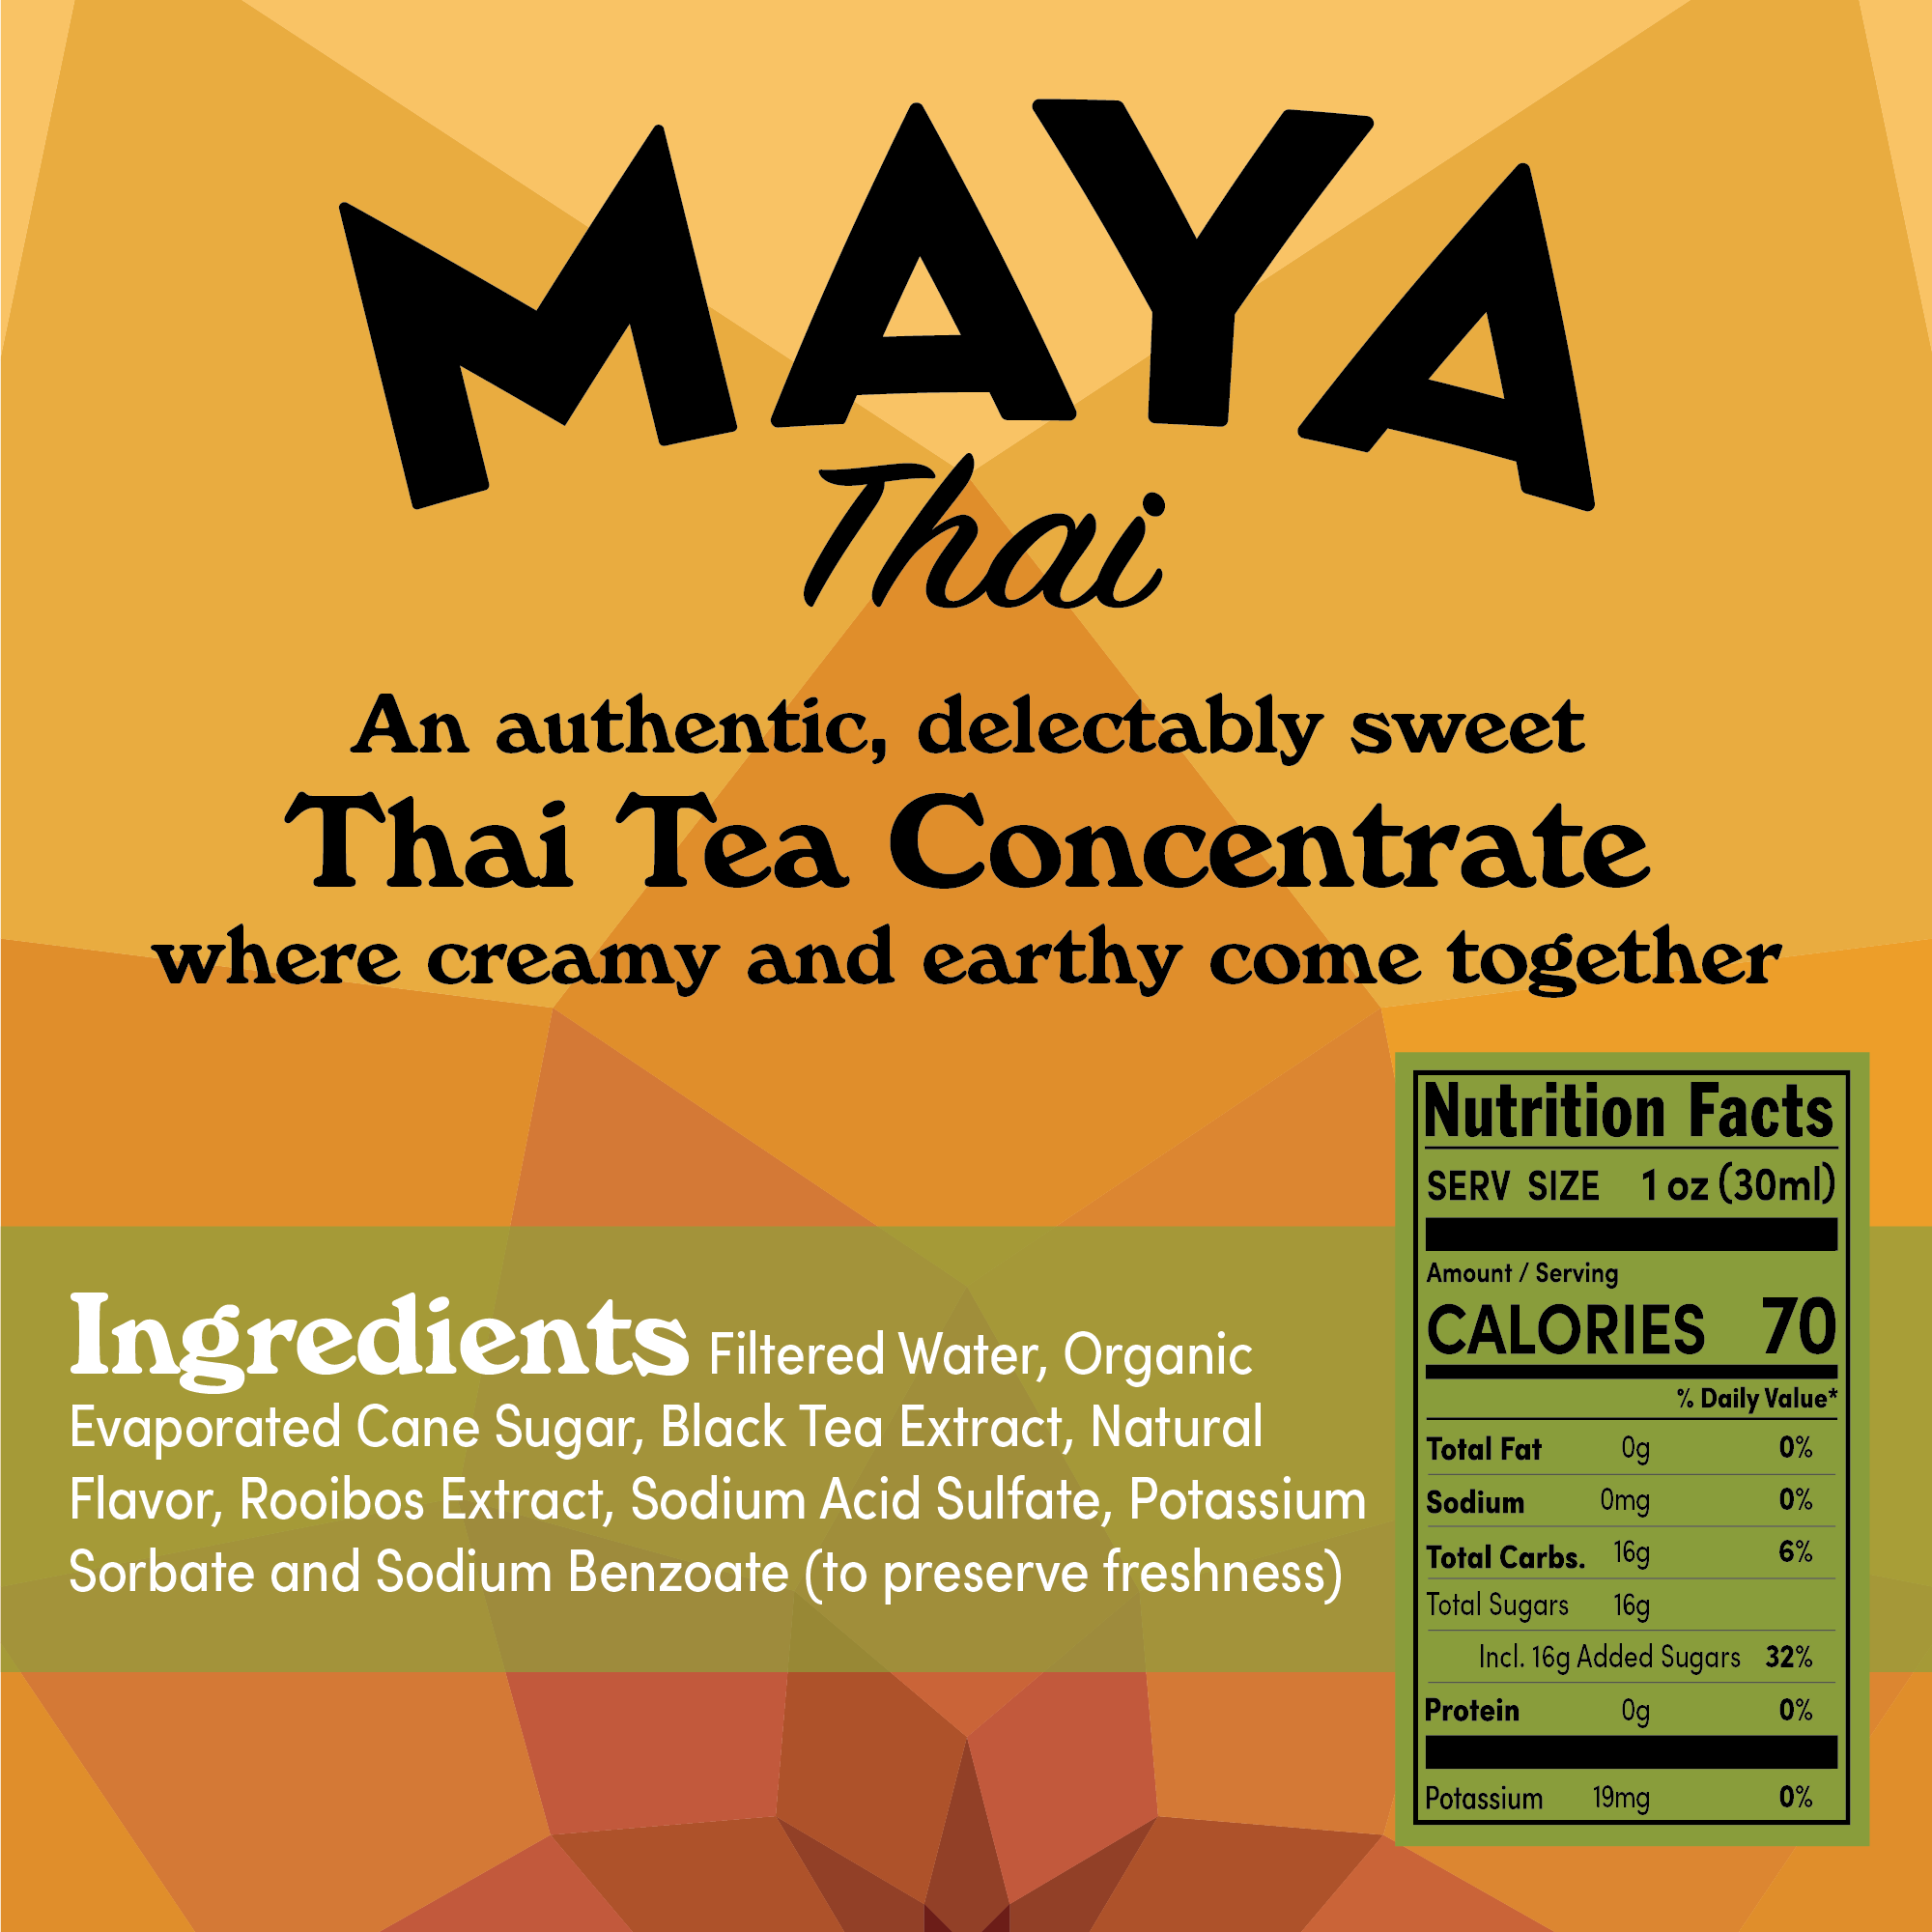 Maya Thai